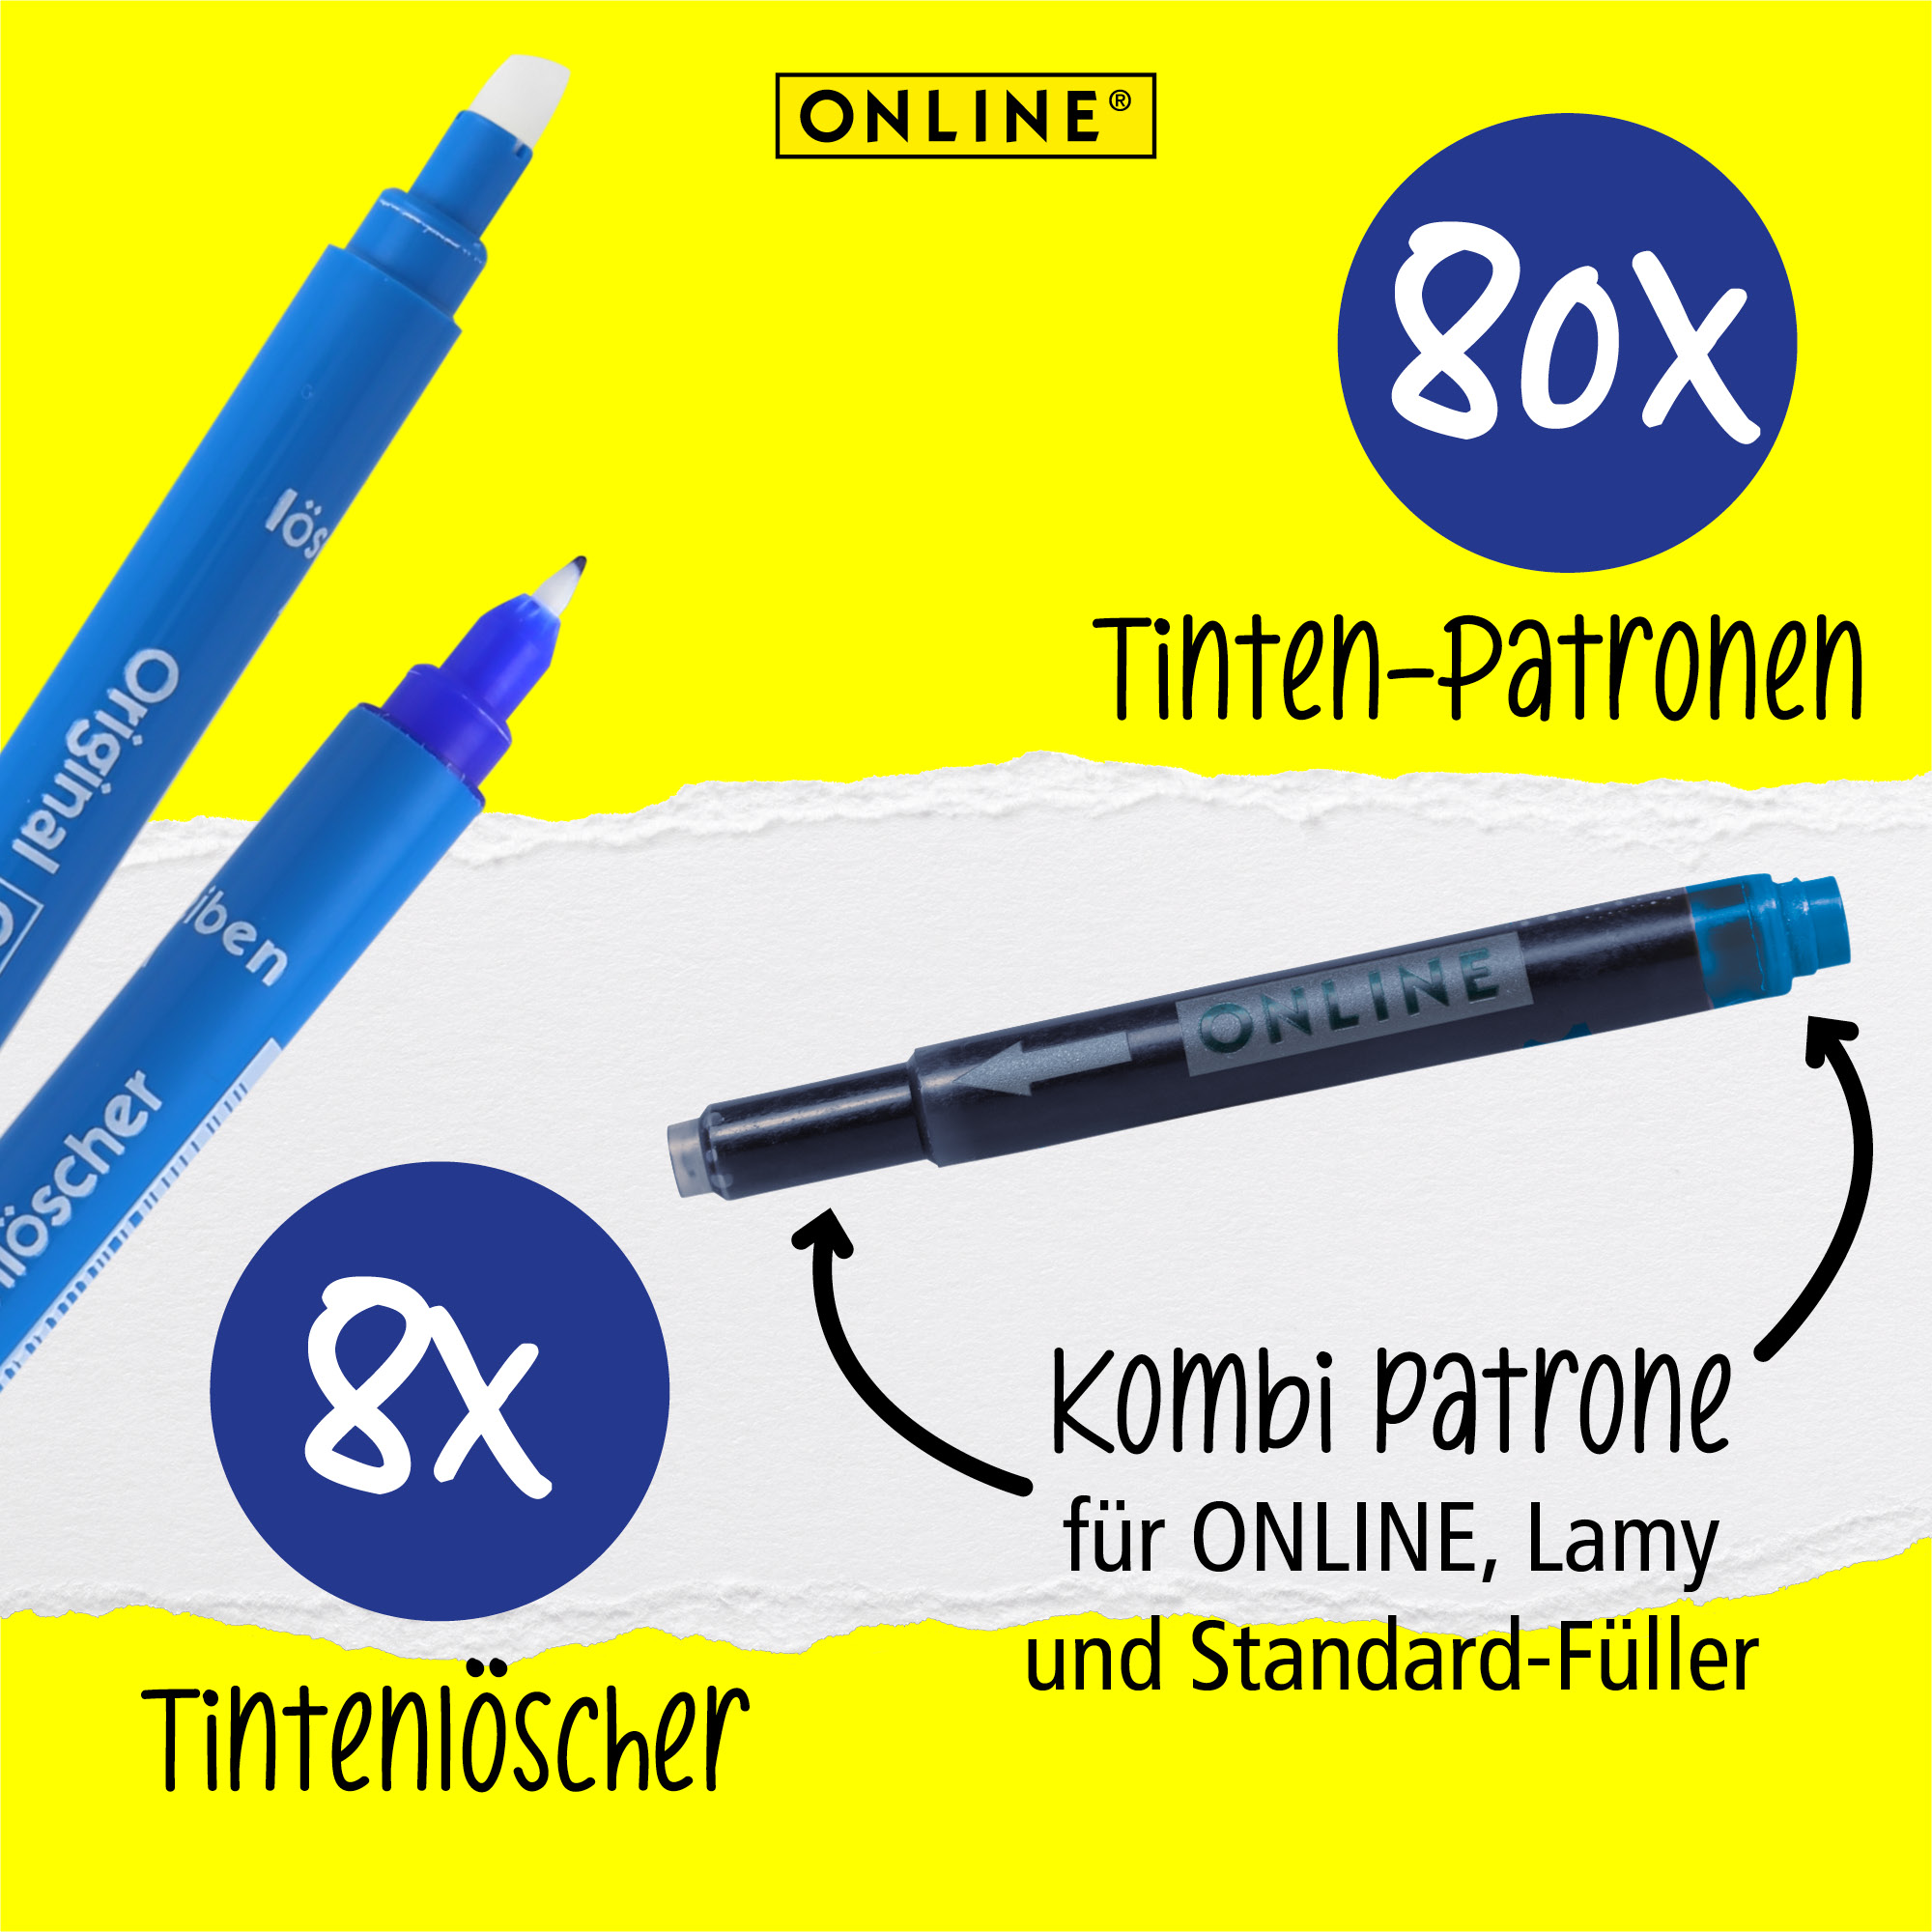 Tintenpatronen Vorteils-Pack 80x Patronen & 8x Löscher